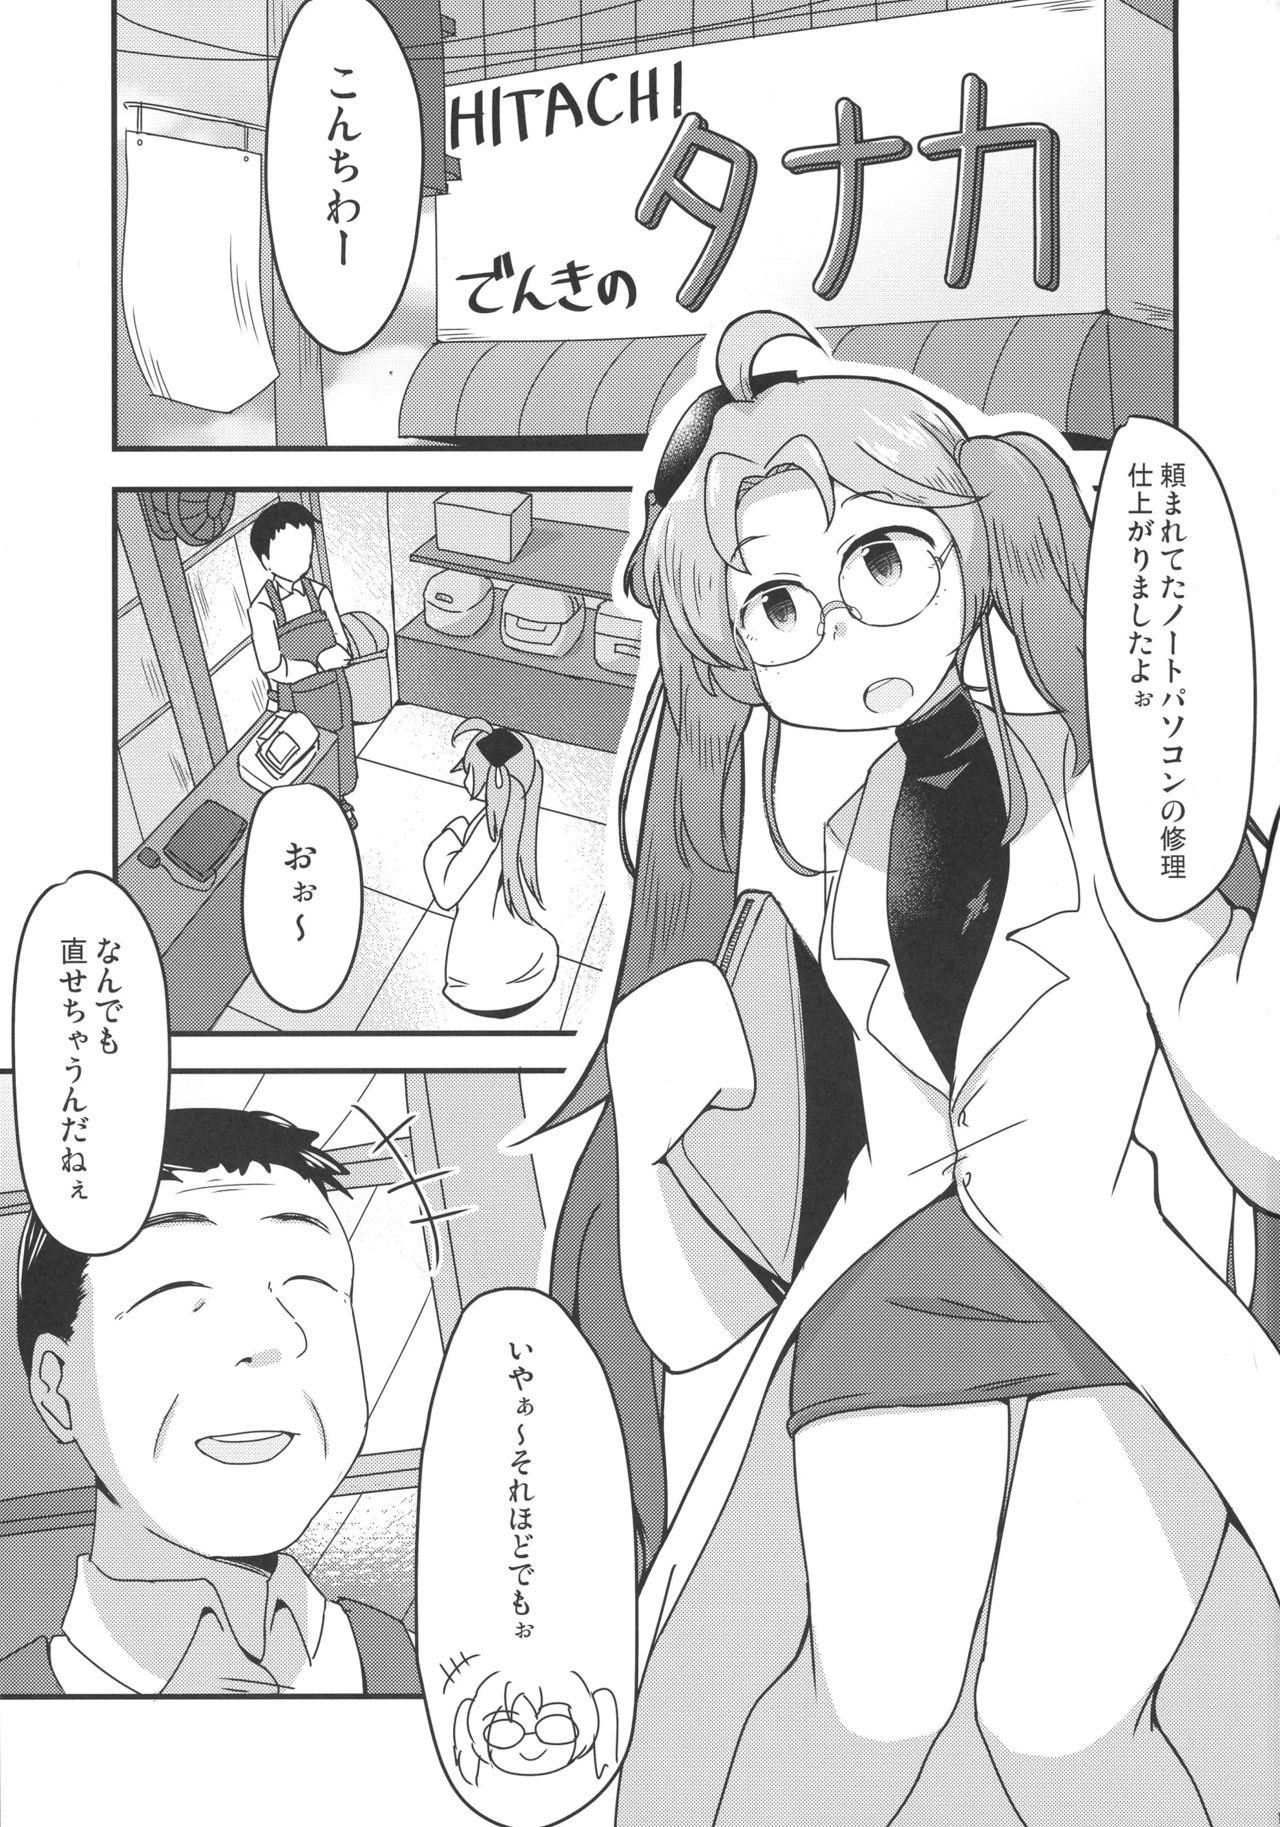 Pija Hiraga-san no Yarakashi - Sengoku collection Novinho - Page 3